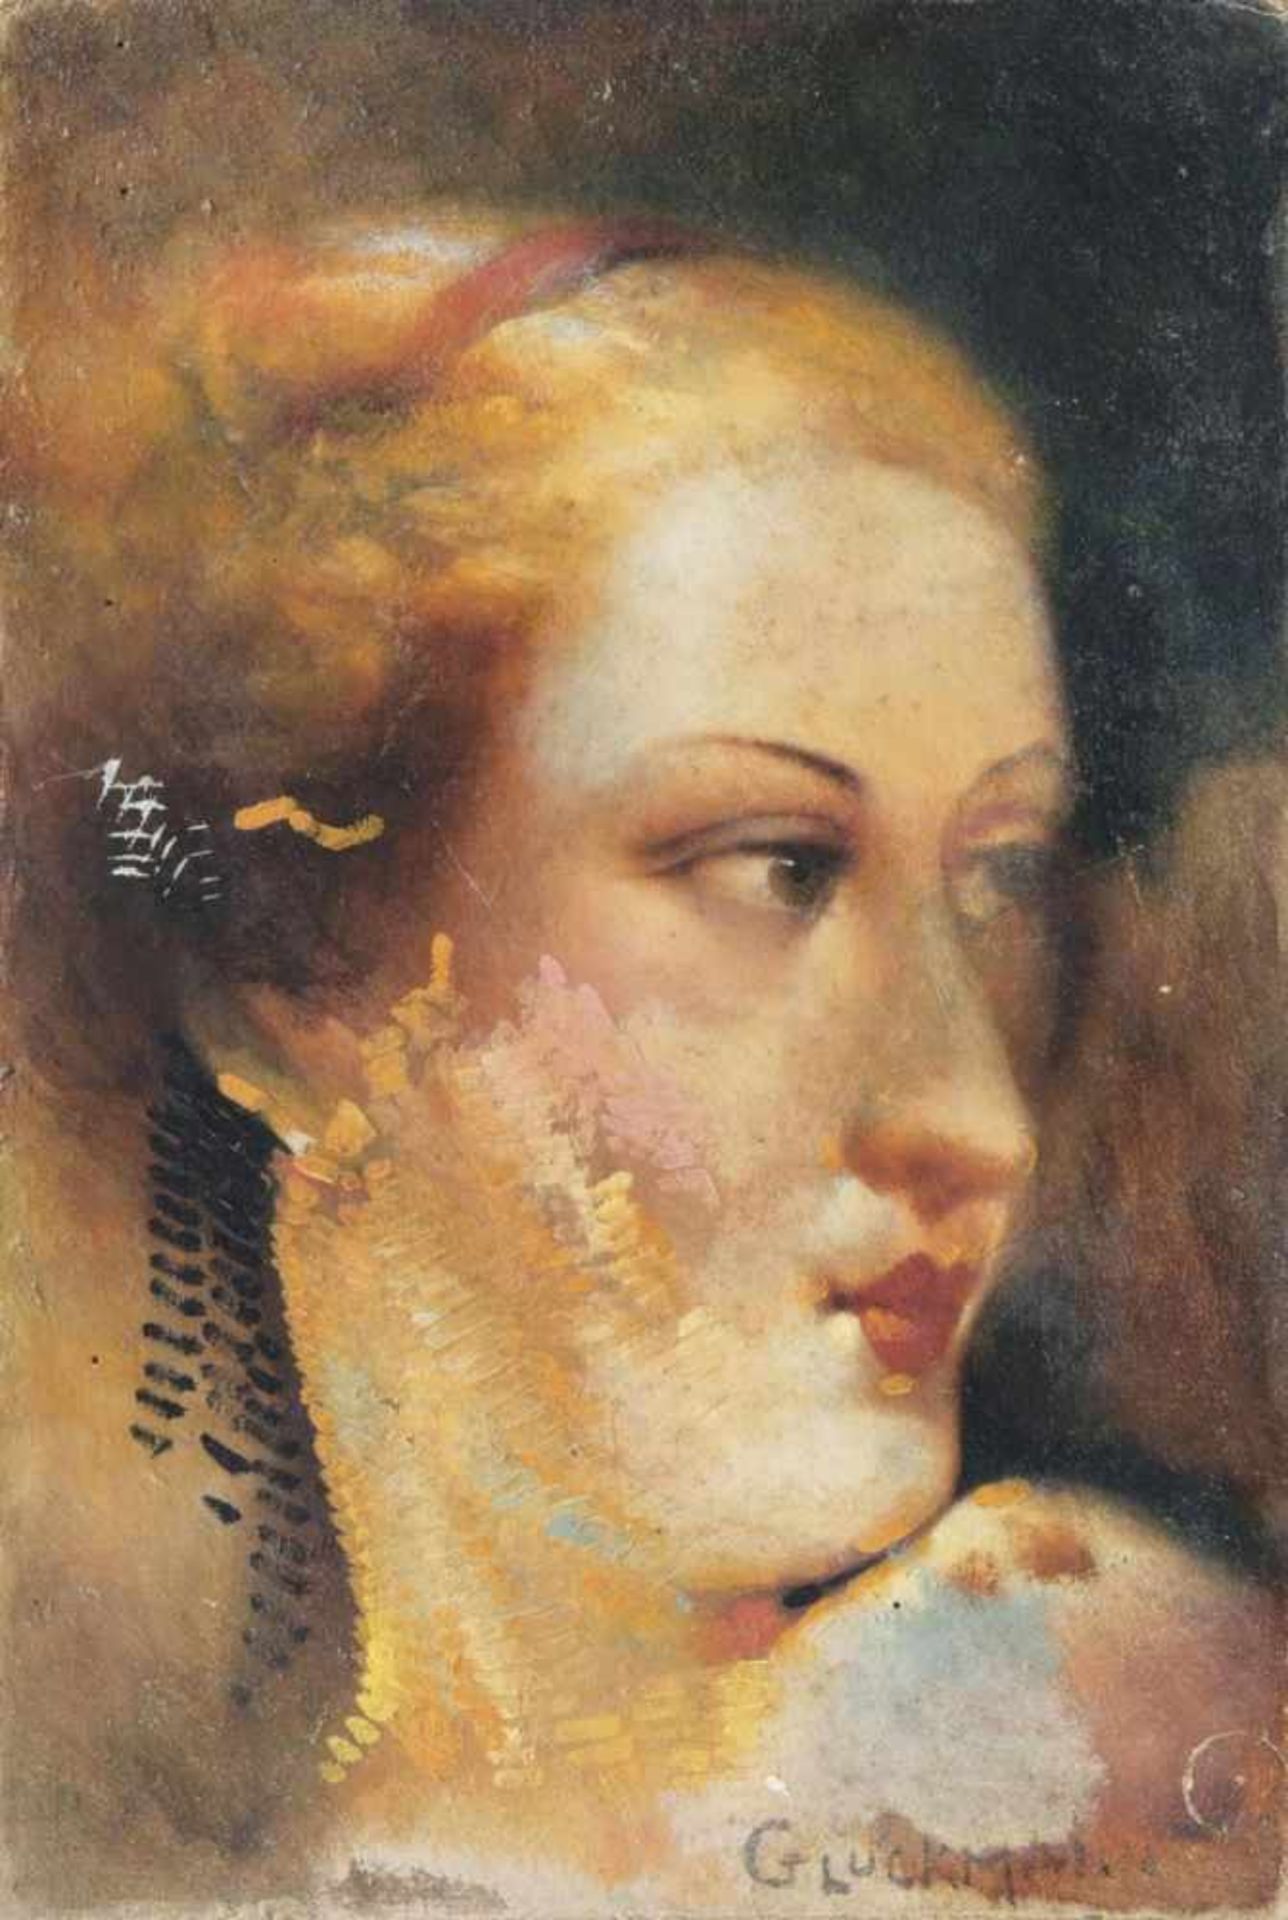 Gluckmann, Grigorij(Vitebsk 1898 - Los Angeles 1973)Portrait of a LadyOil/cardboard, 27,5 x 18 cm,